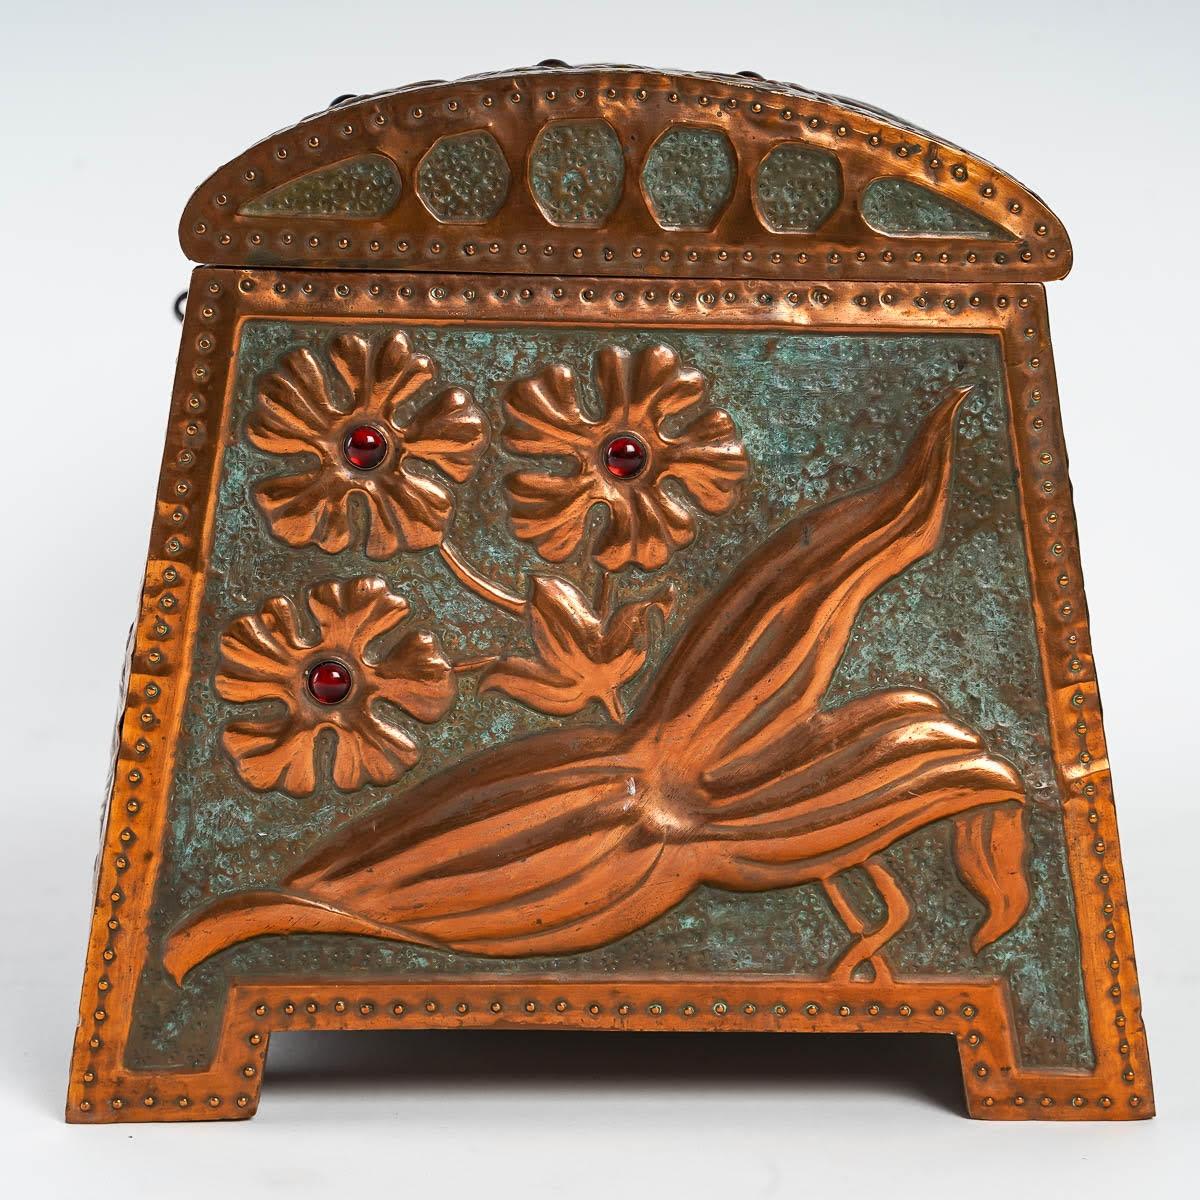 Boîte Art Nouveau en cuivre repoussé, vers 1900.

Boîte de style Art Nouveau, 1900, cuivre repoussé sur un intérieur en bois, cabochons en verre rouge, avec clé.

Dimensions : h : 17cm, l : 30.5cm, d : 18cm